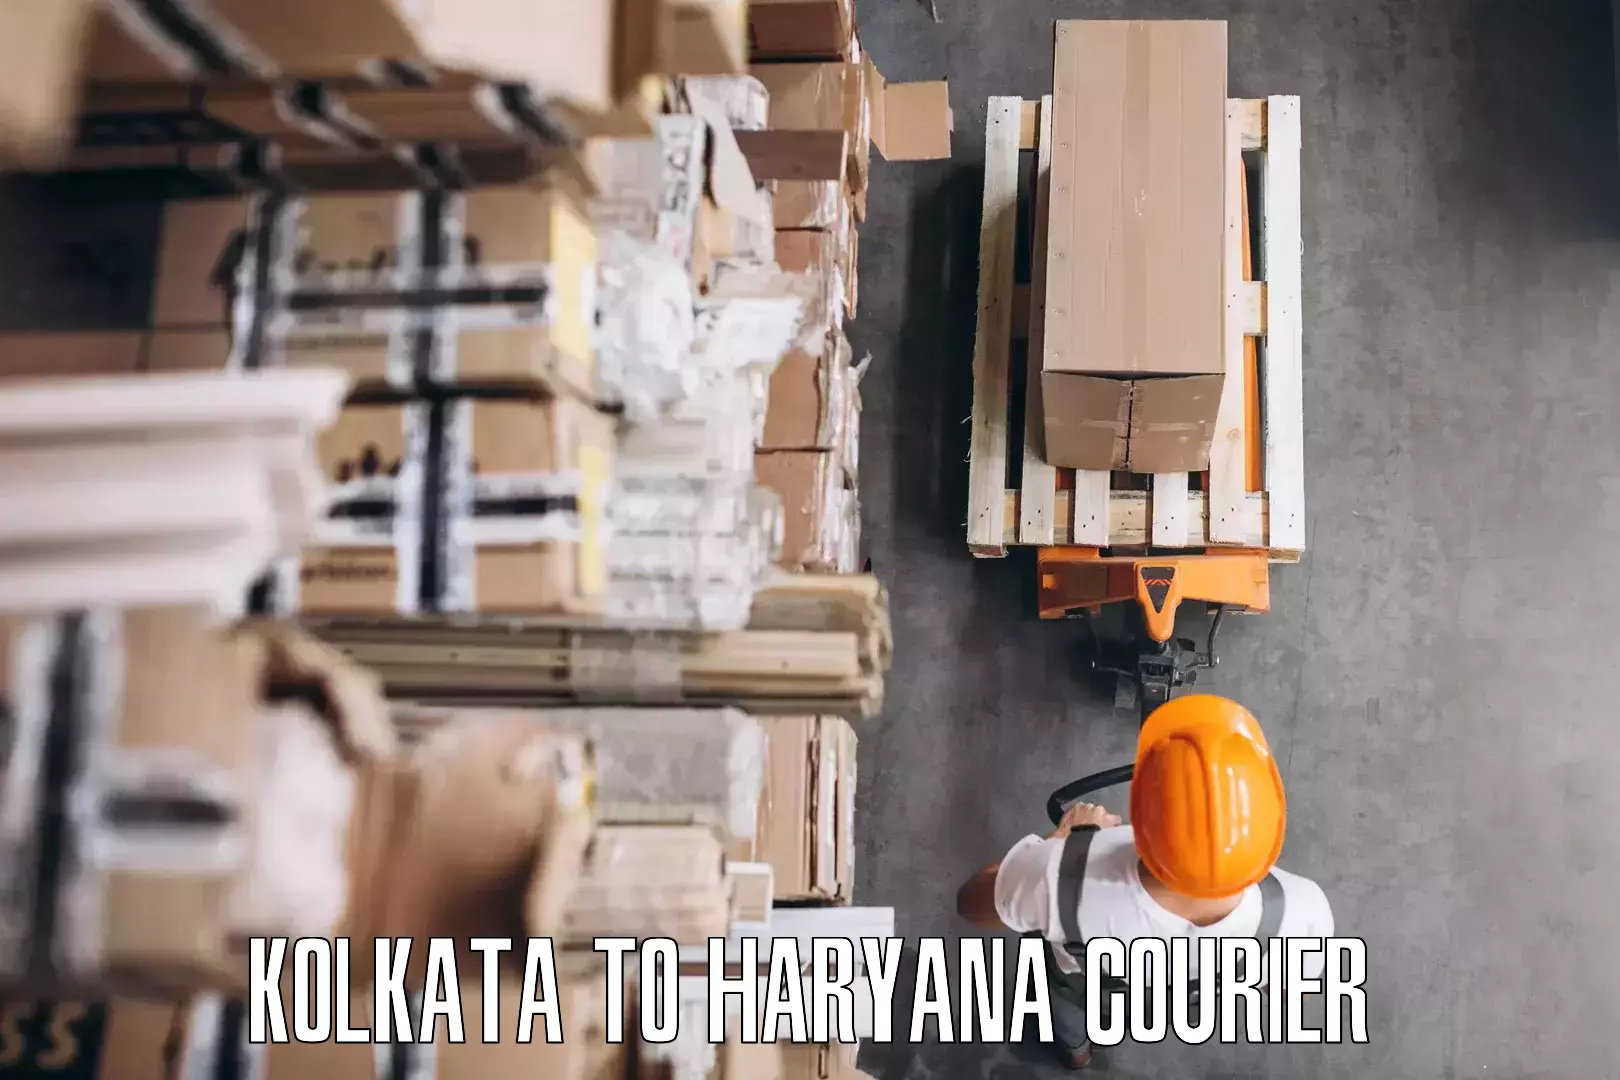 Furniture transport specialists Kolkata to Taraori